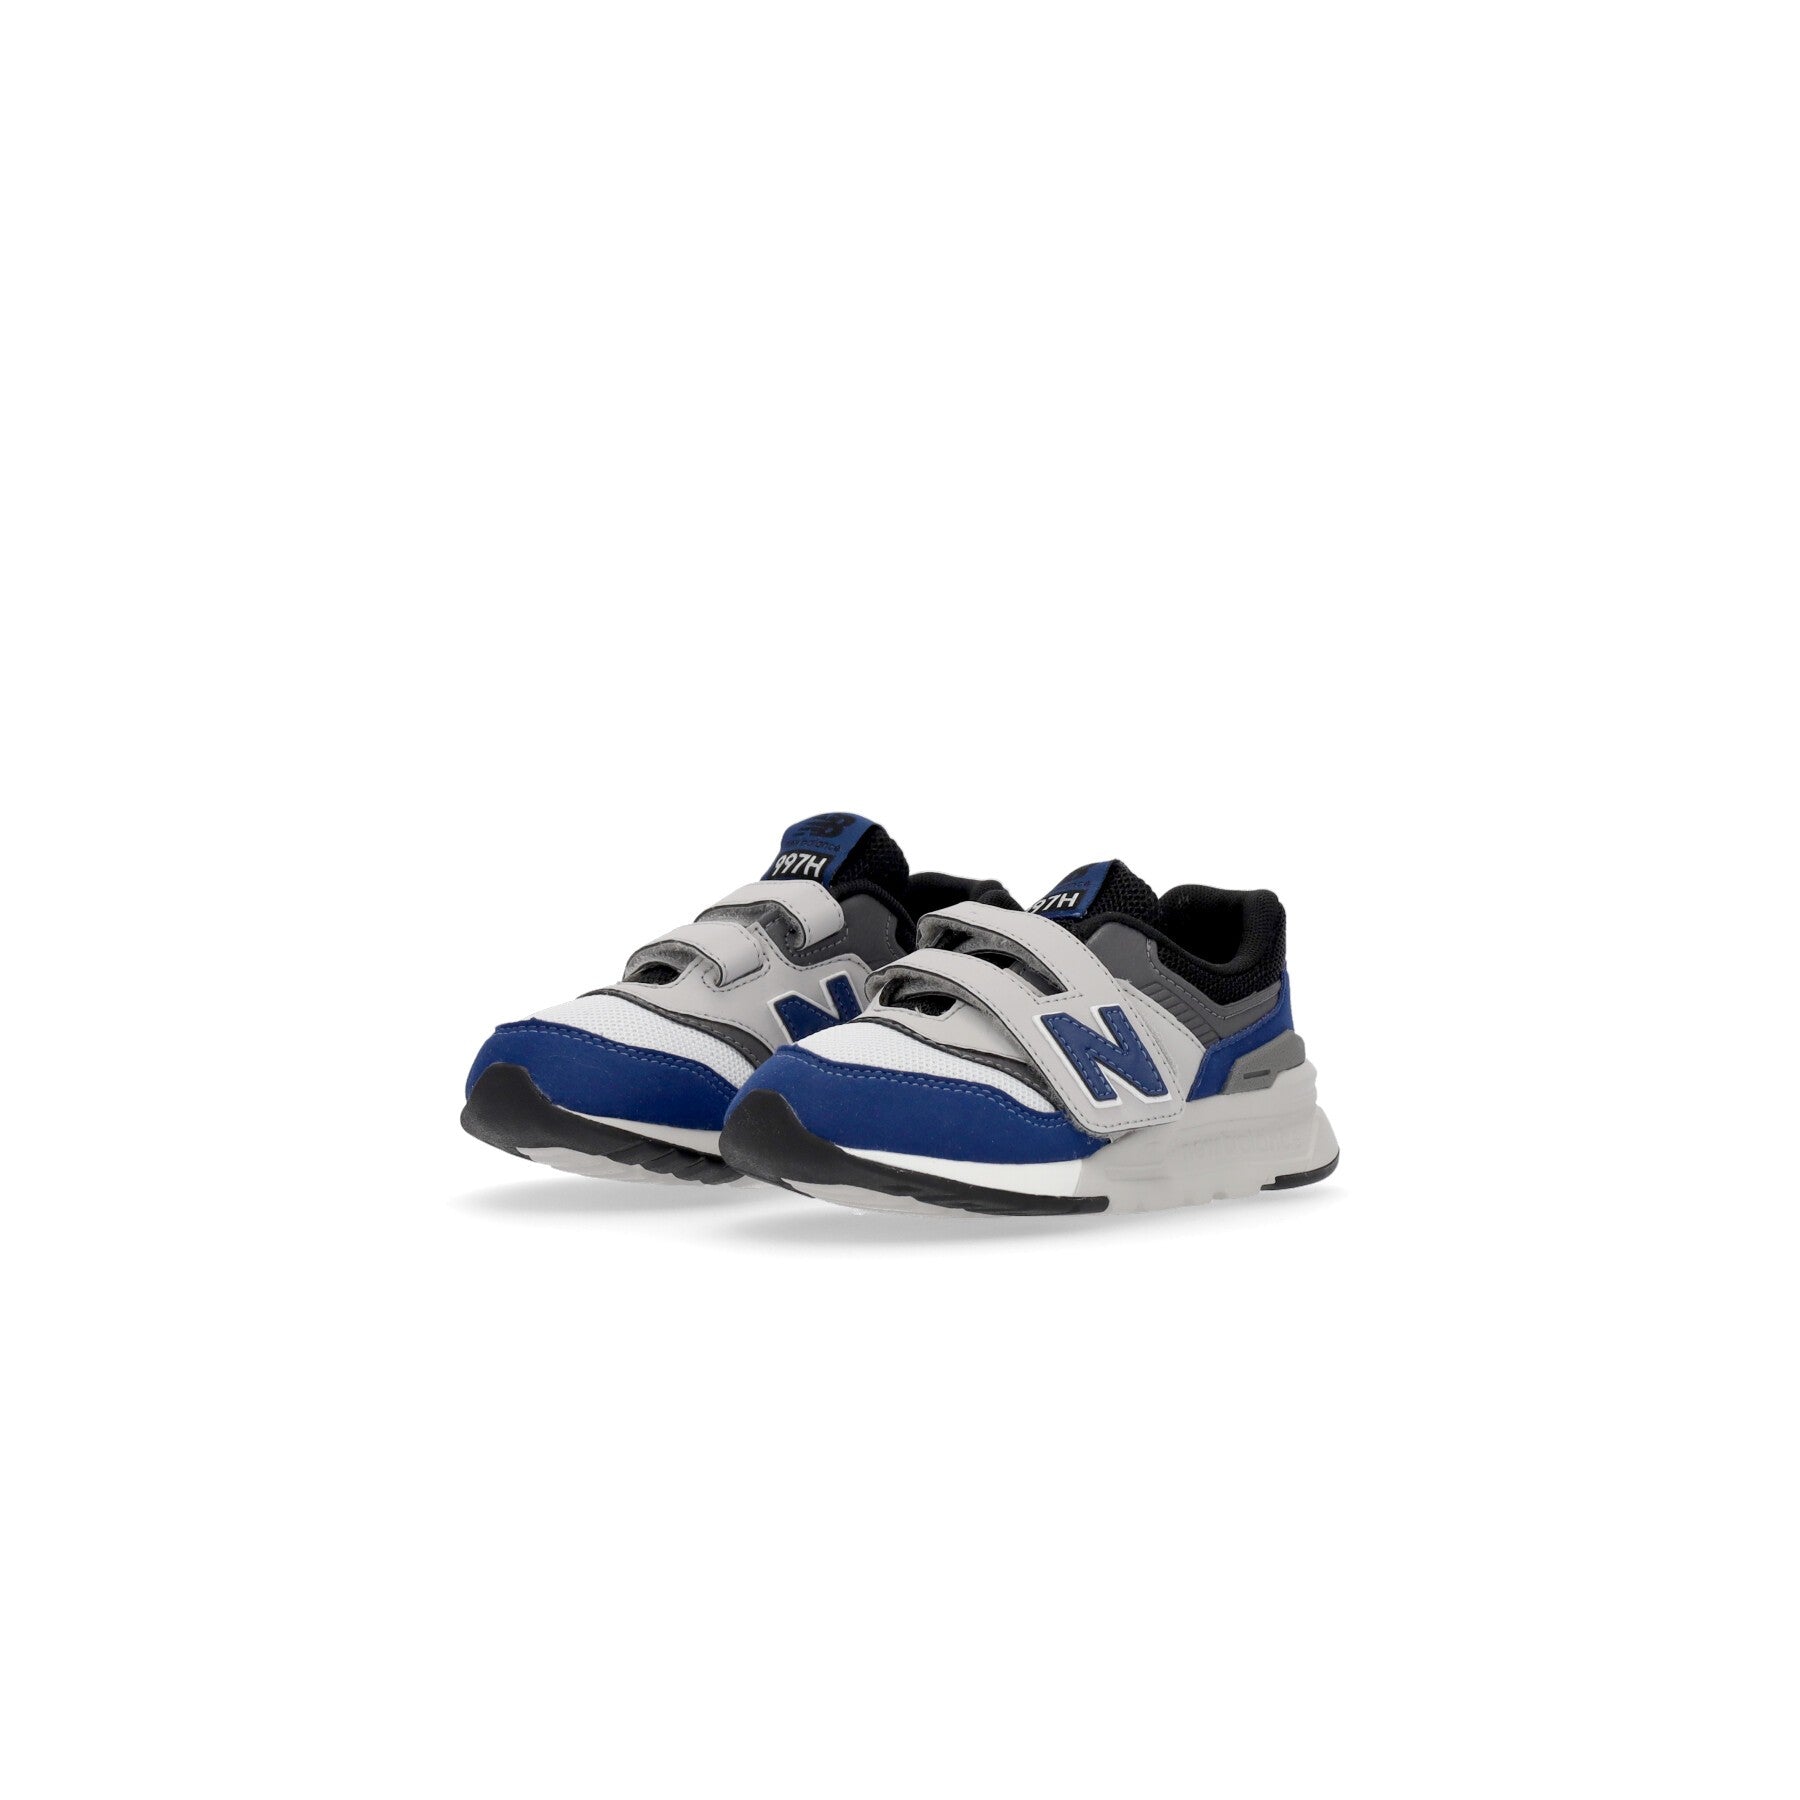 Low Child Shoe 997 Blue